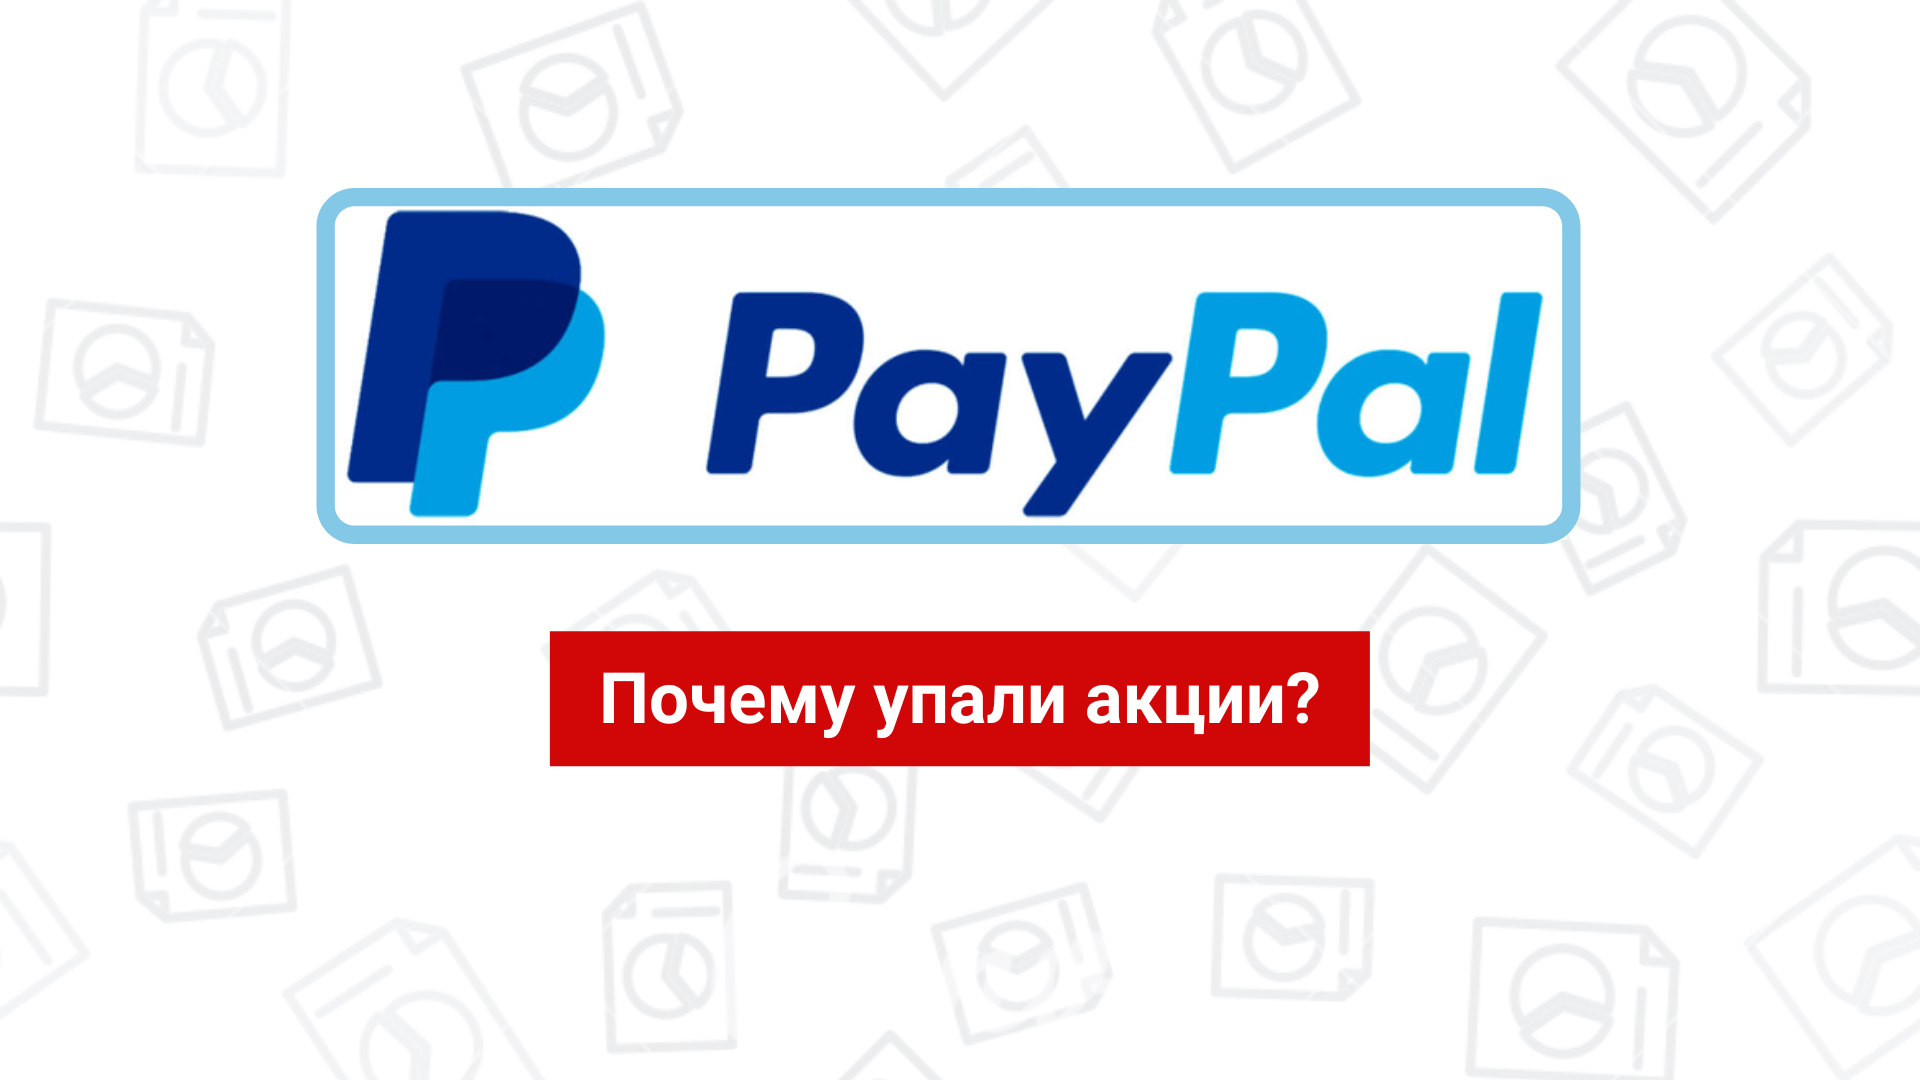 Почему упали акции PayPal и что происходит внутри компании?